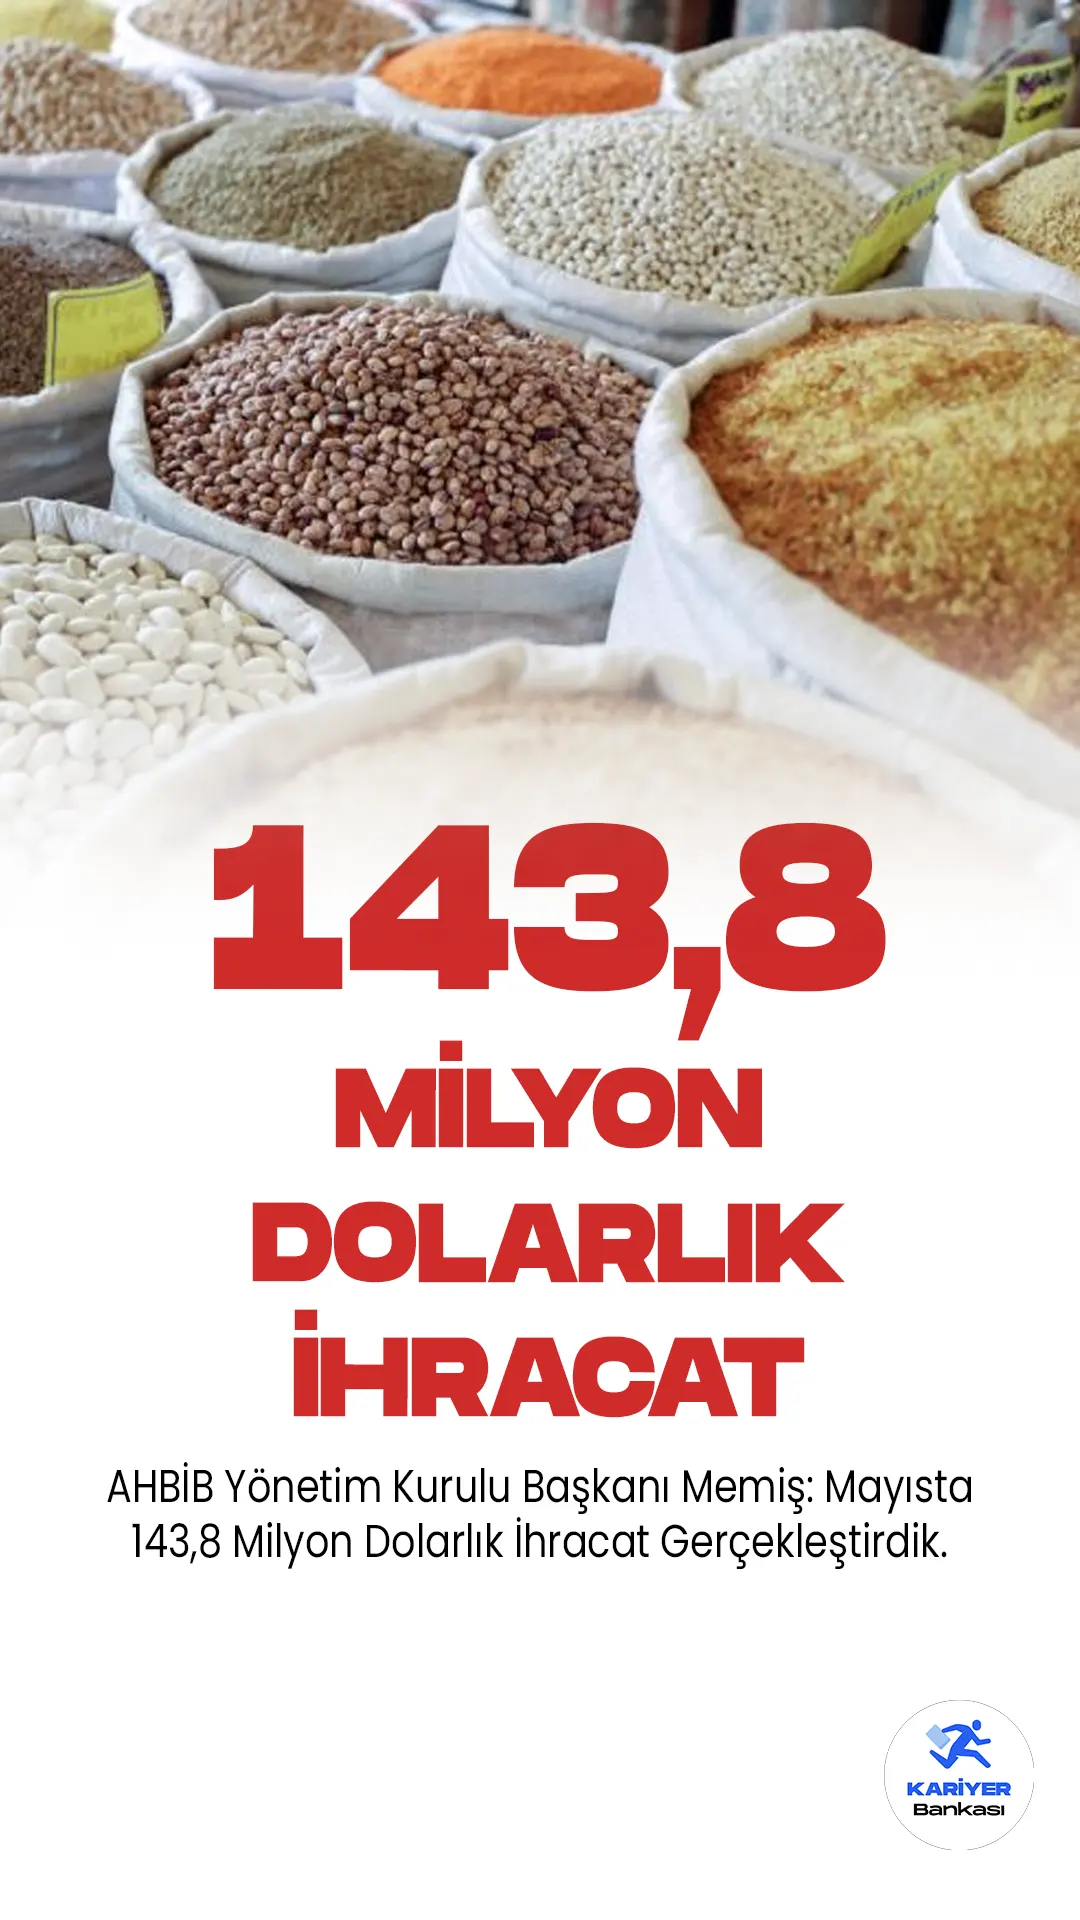 AHBİB Yönetim Kurulu Başkanı Memiş: Mayısta 143,8 Milyon Dolarlık İhracat Gerçekleştirdik.Akdeniz Hububat, Bakliyat, Yağlı Tohumlar ve Mamulleri İhracatçıları Birliği (AHBİB) Yönetim Kurulu Başkanı Veysel Memiş, sektörün mayıs ayında Türkiye geneli ihracatının 946,6 milyon dolar olduğunu belirtti. Memiş, AHBİB'in dış satımının söz konusu dönemde önemli bir artış gösterdiğini ifade etti.